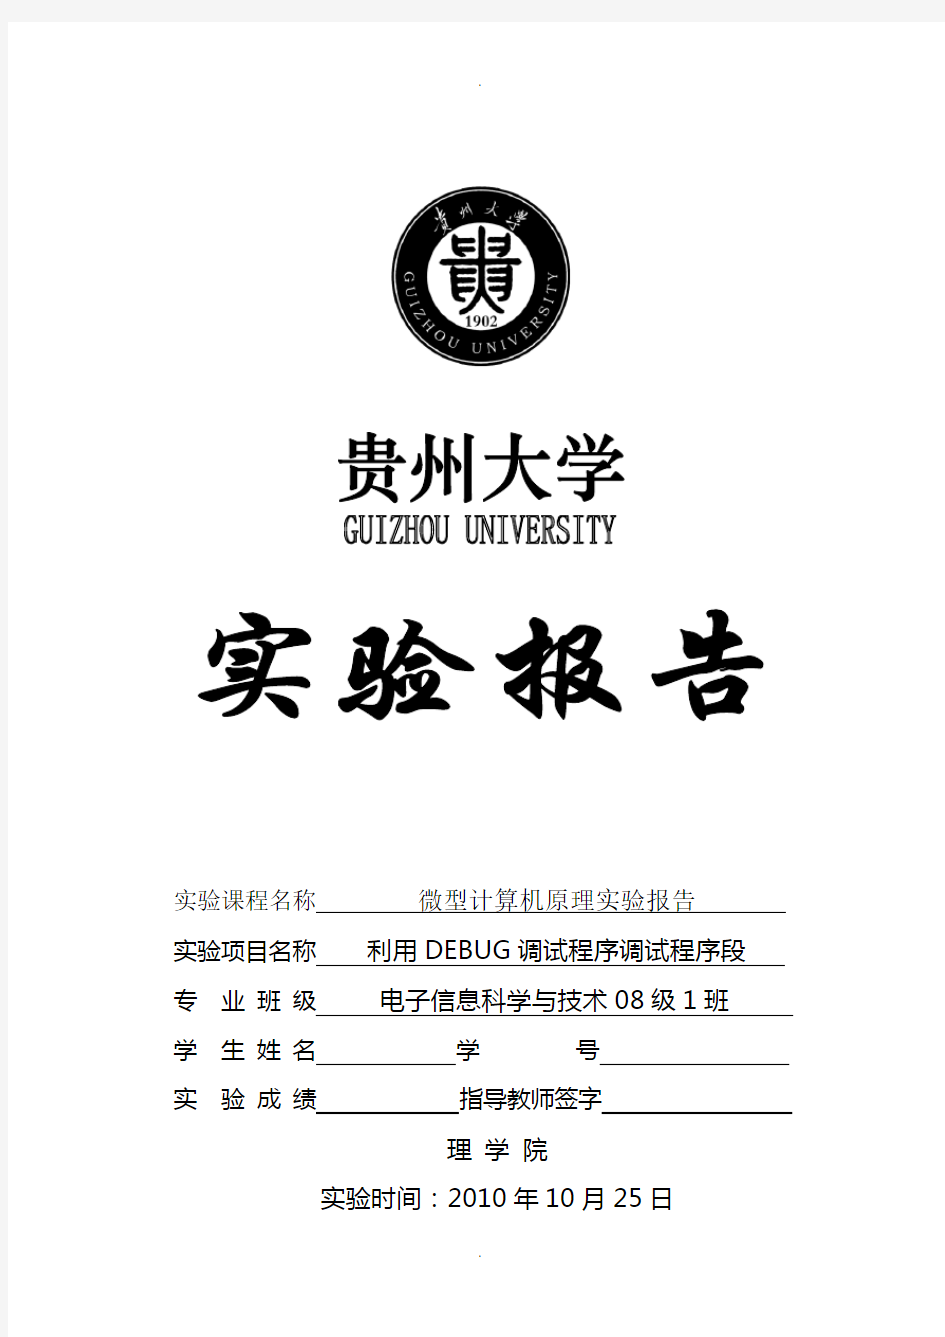 贵州大学微机原理(汇编语言)实验报告-Ex01-利用DEBUG调试程序调试程序段